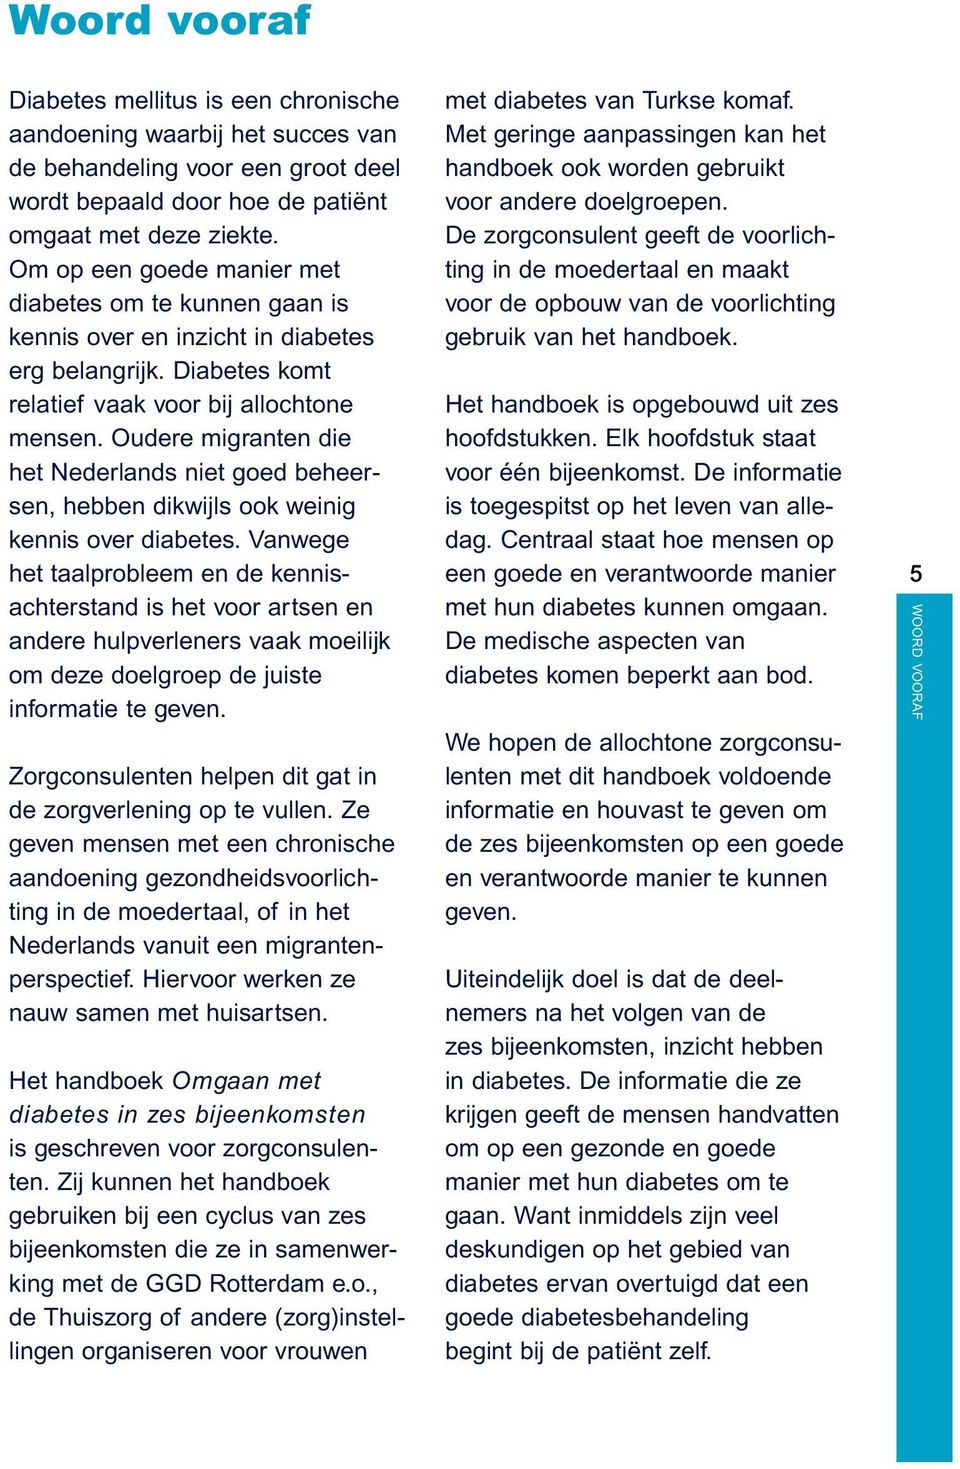 Oudere migranten die het Nederlands niet goed beheersen, hebben dikwijls ook weinig kennis over diabetes.